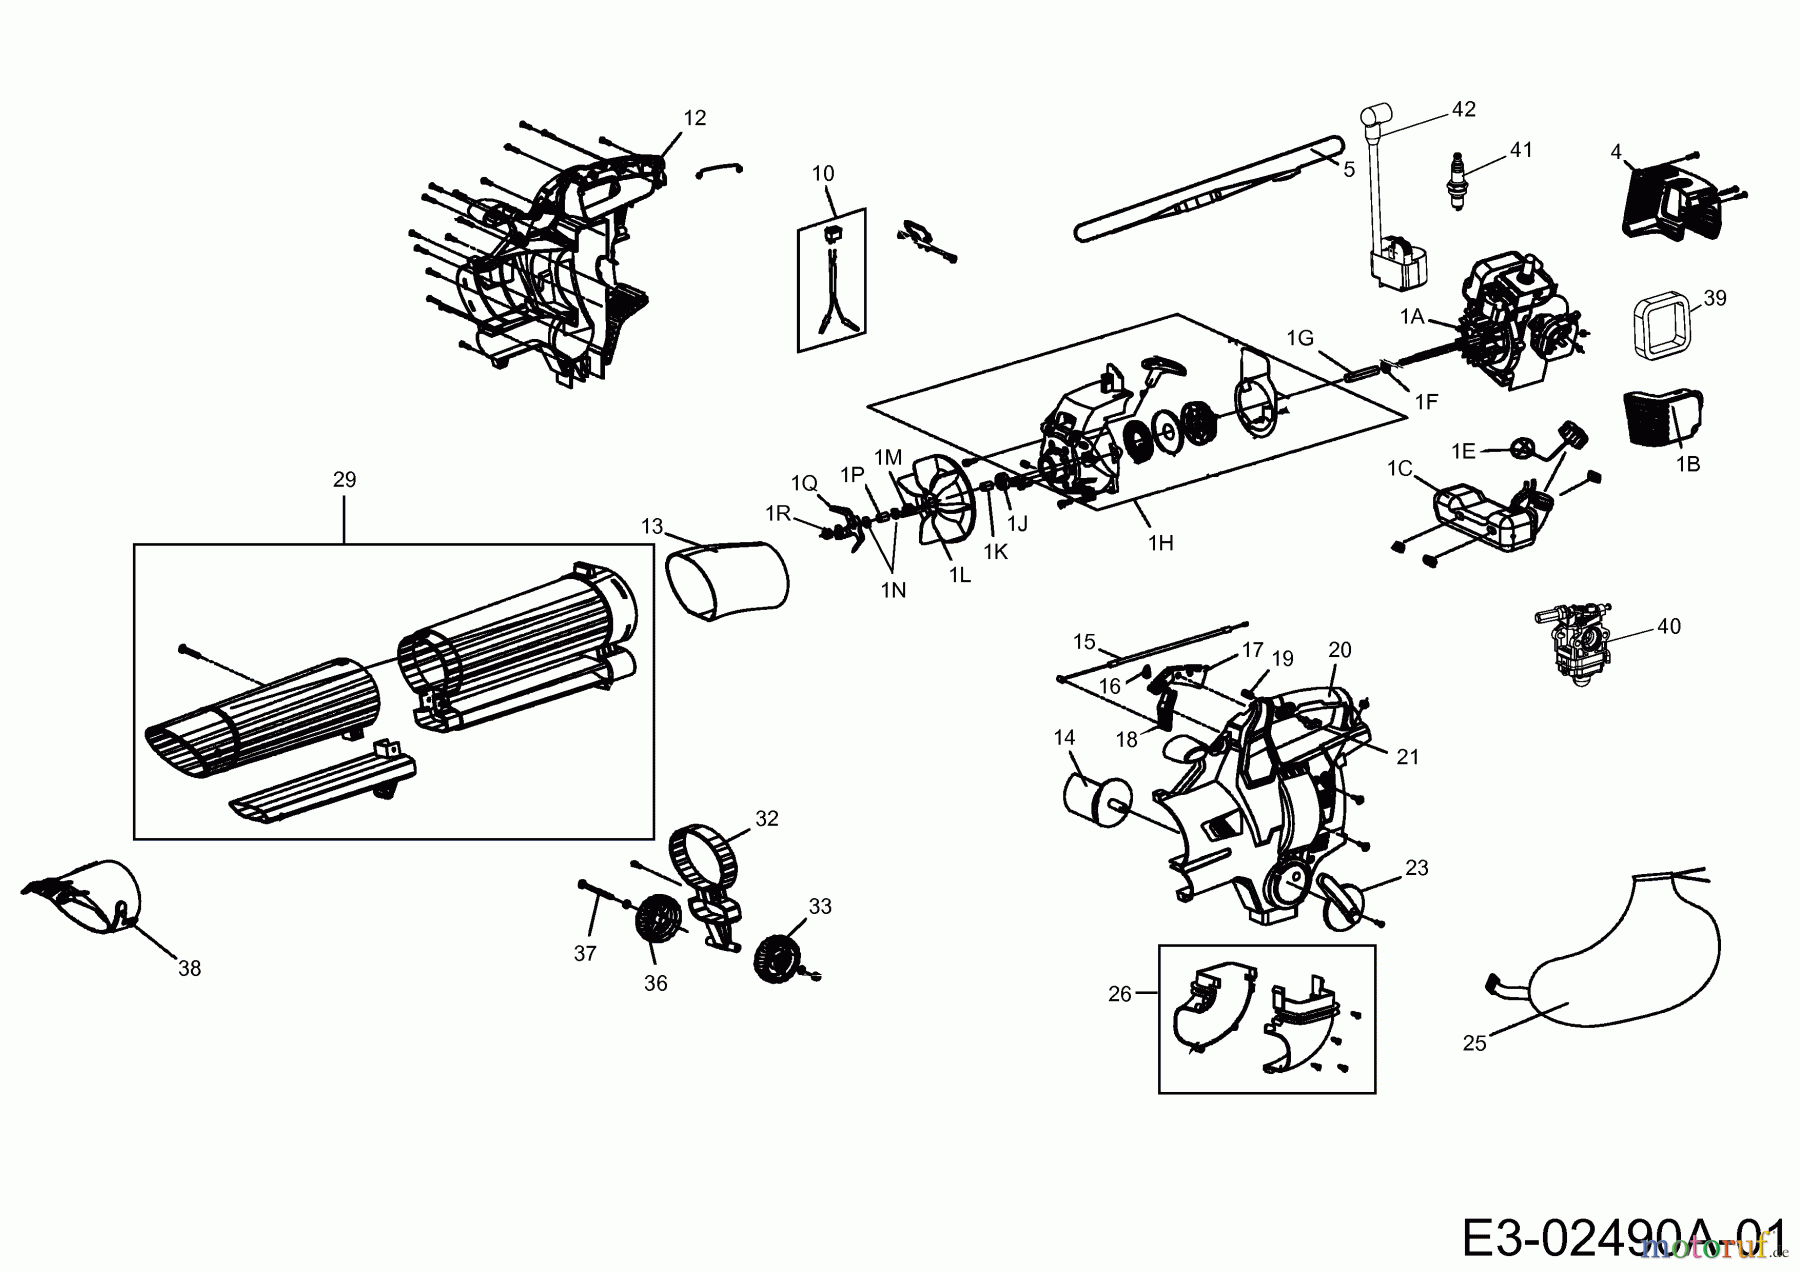  Wolf-Garten Leaf blower, Blower vac LBV 2500 B 41AS0BU0650  (2014) Basic machine